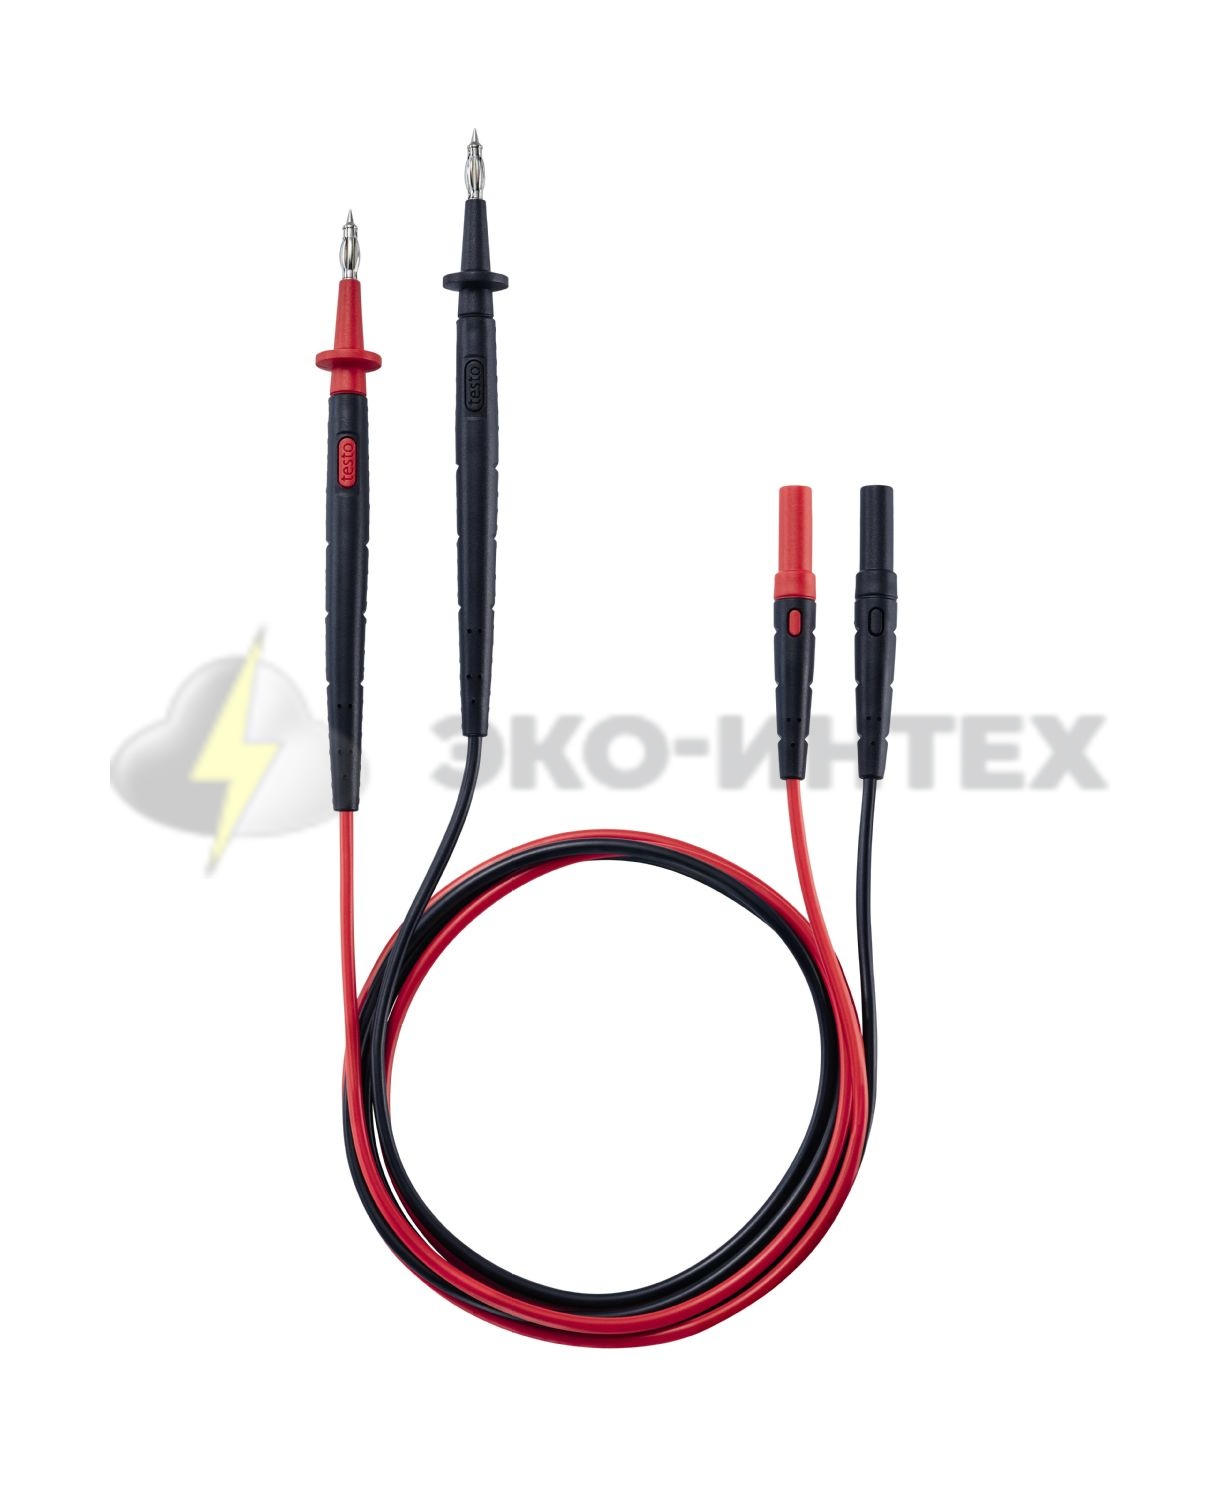 Комплект стандартных измерительных кабелей, 4 мм - прямая вилка